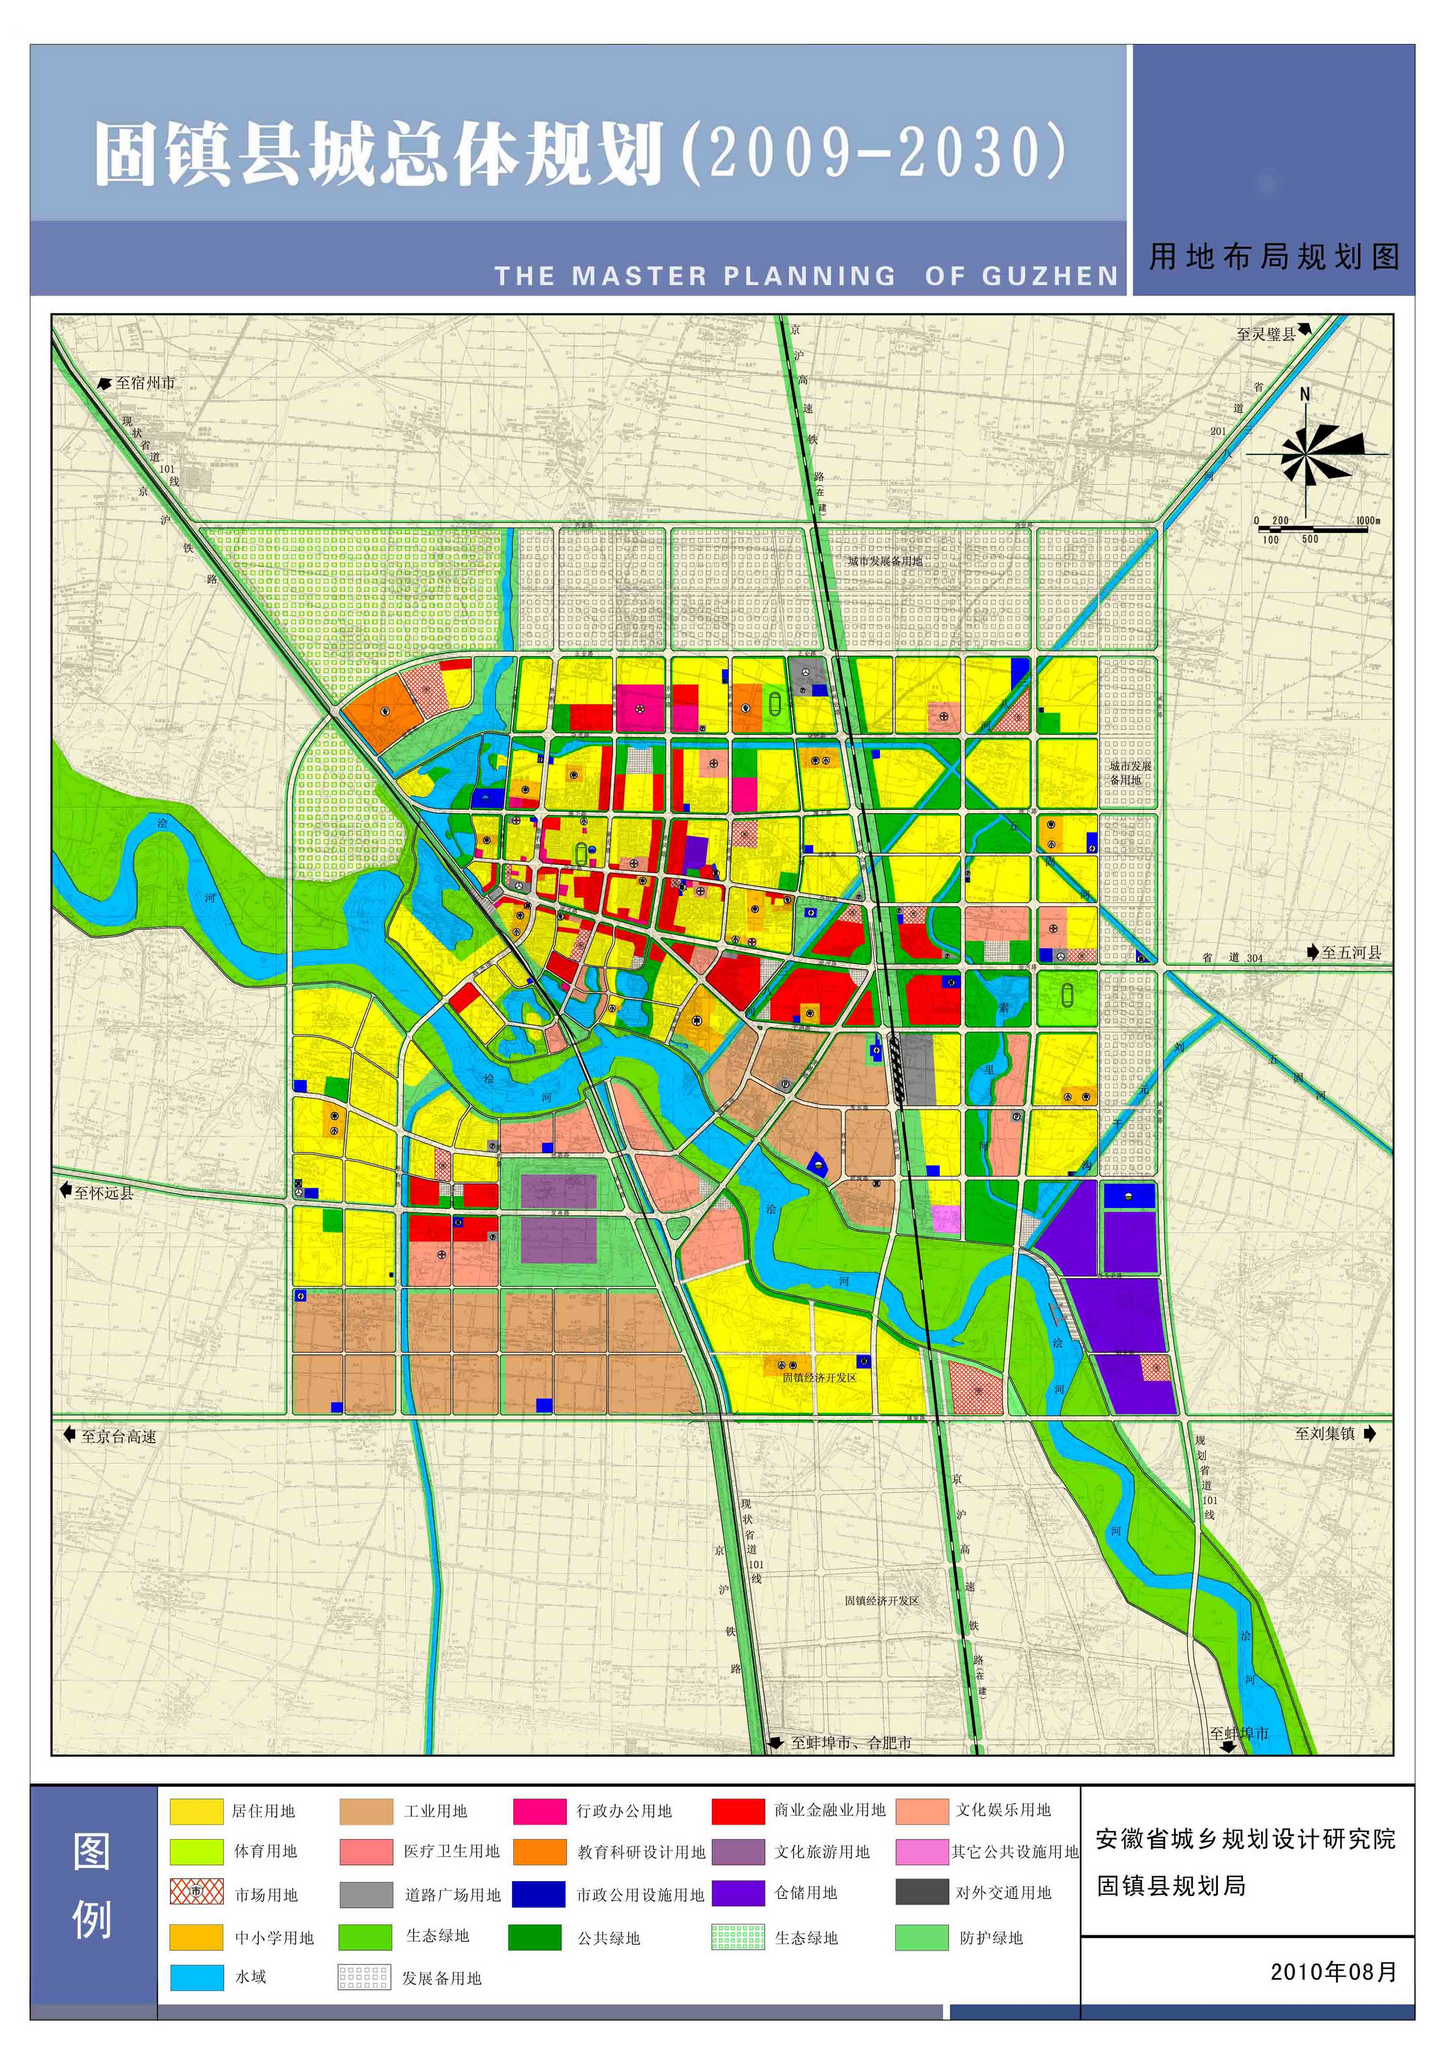 【整理】固镇县整体规划图：用地布局规划图+结构分析图+规划结构图+综合交通规划图+绿地景观规划图